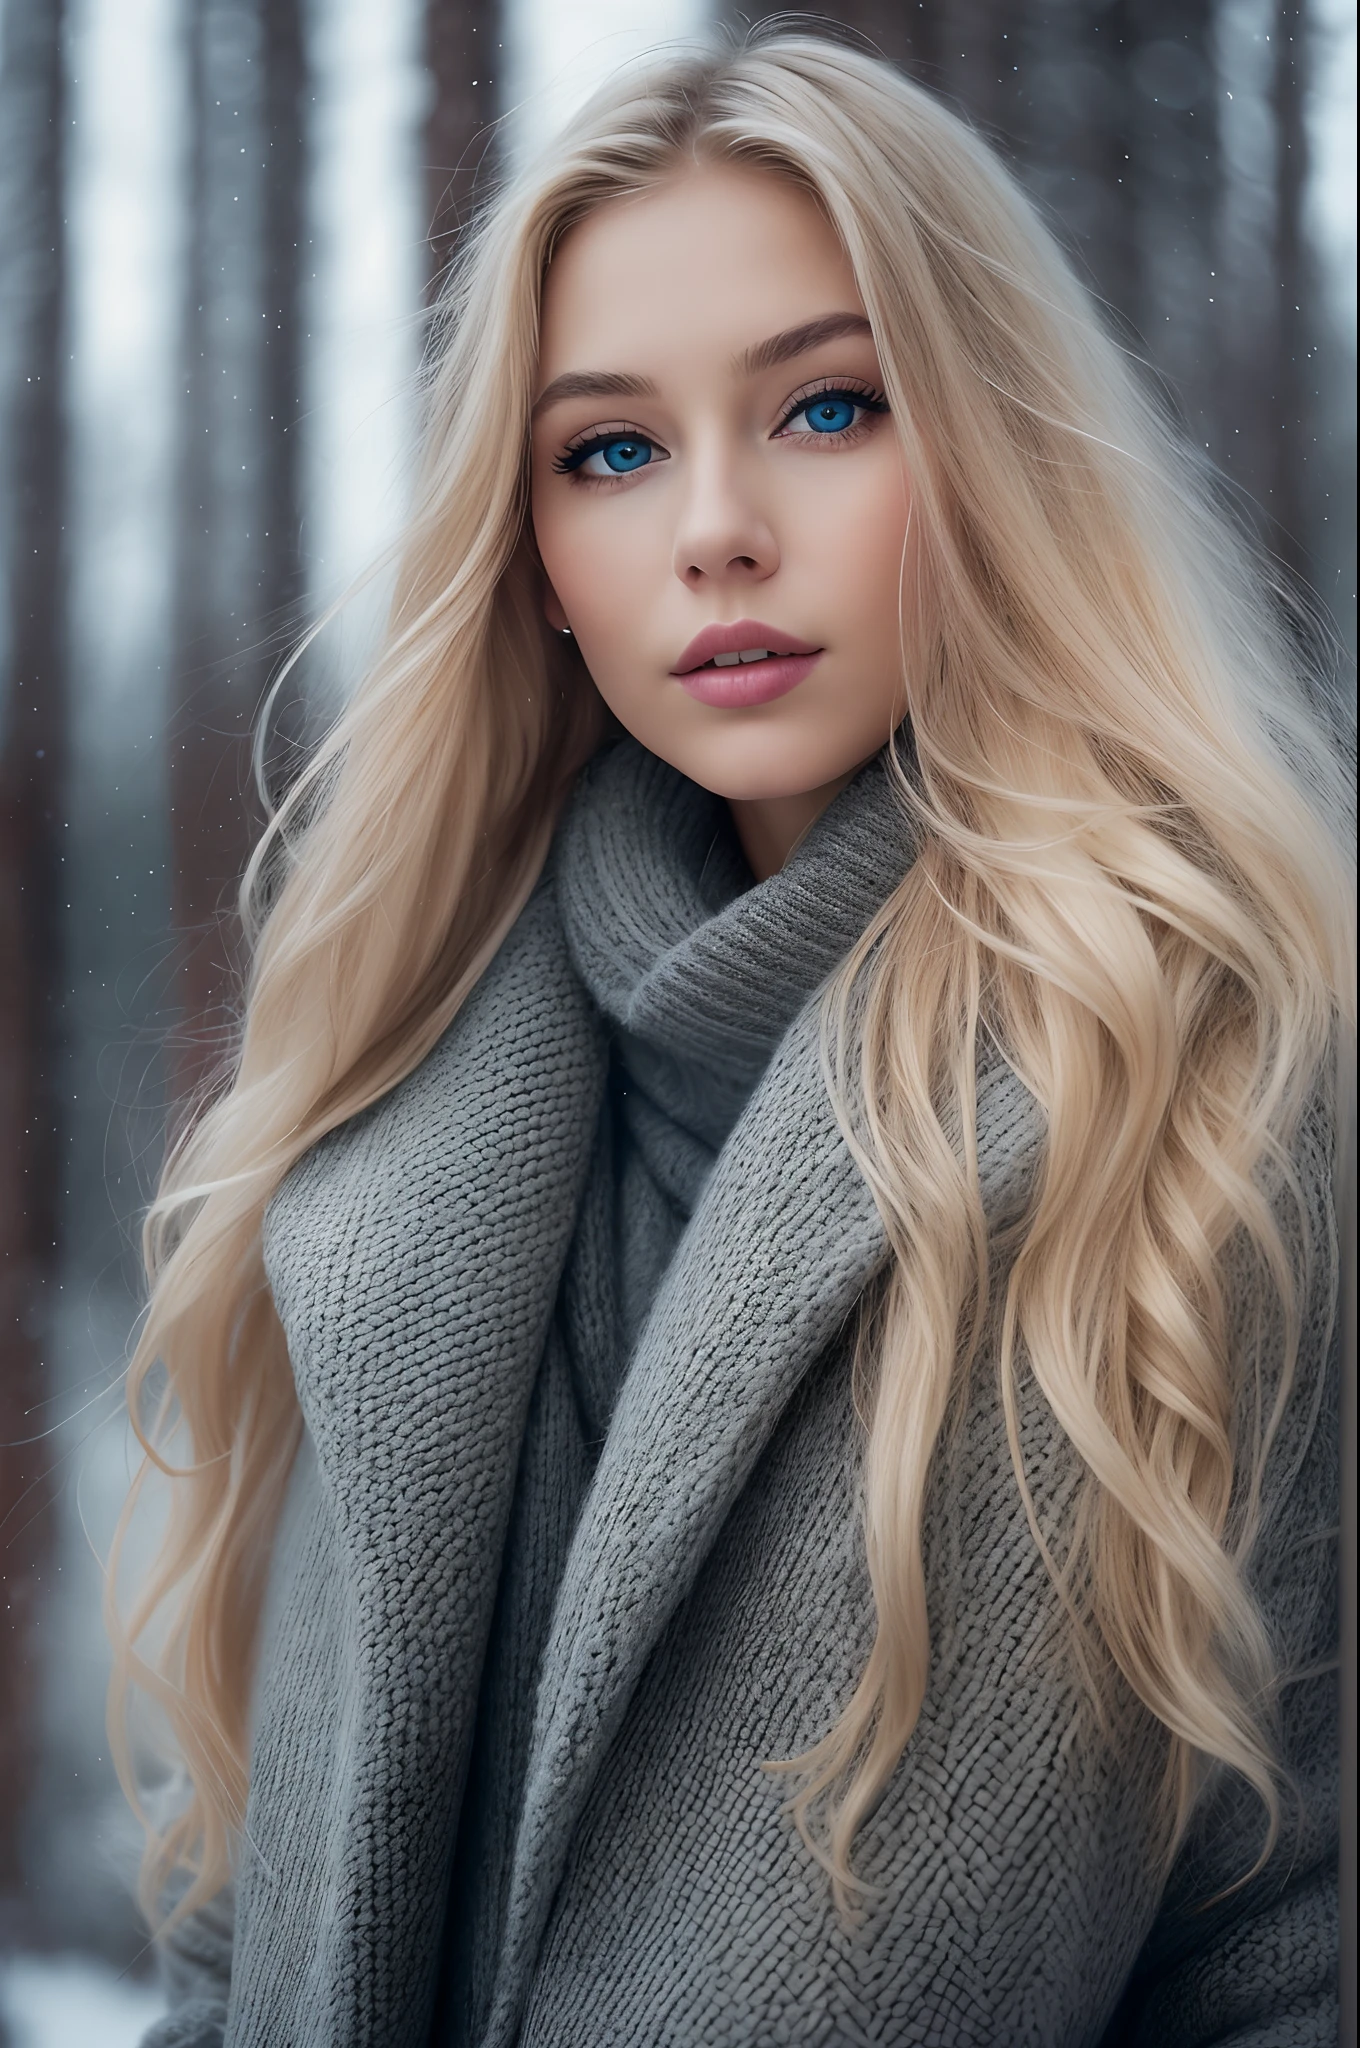 긴 웨이브 금발 머리에 겨울 옷을 입은 화려한 노르웨이 소녀의 전문 초상화 사진, 멋진 대칭 얼굴, 우아하고 따뜻한 겨울 패션 옷을 입으세요, 유키, 안개,매우 날카로운, 상세한 얼굴,
놀라운 현대 도시 환경, 초현실주의, 매우 상세한, 뒤얽힌, 날카로운 초점, 필드의 깊이, 중간 샷, nffsw, 8K, 완벽한 눈 눈, 고대비